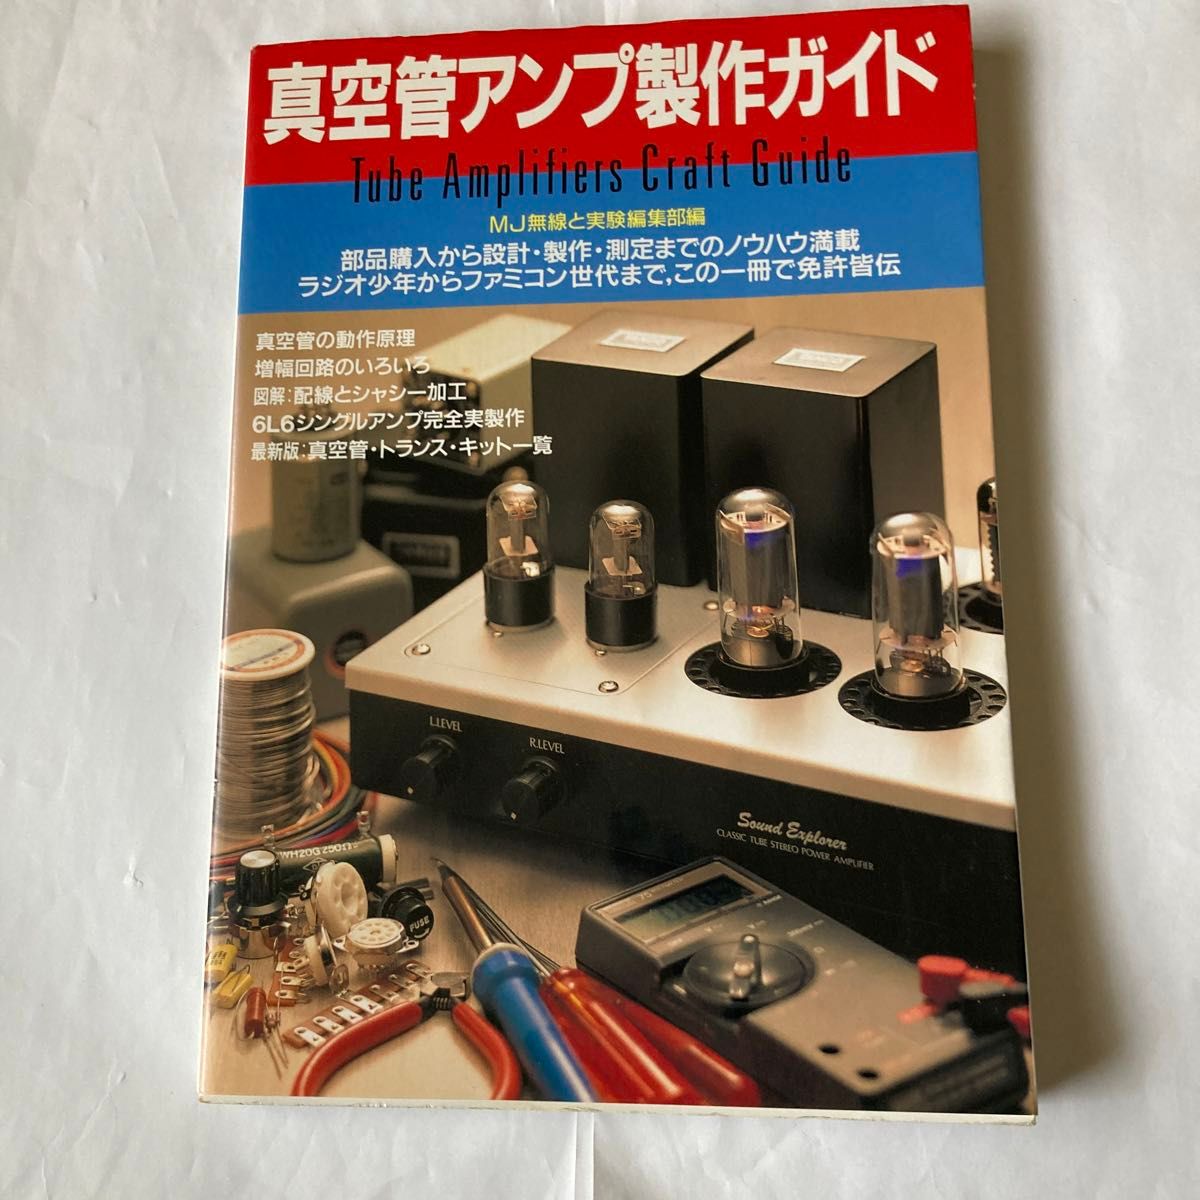 真空管アンプ製作ガイド　1996年3月発行　無線と実験編　真空管アンプ好きの初心者にもベテランにも参考になる書籍です。